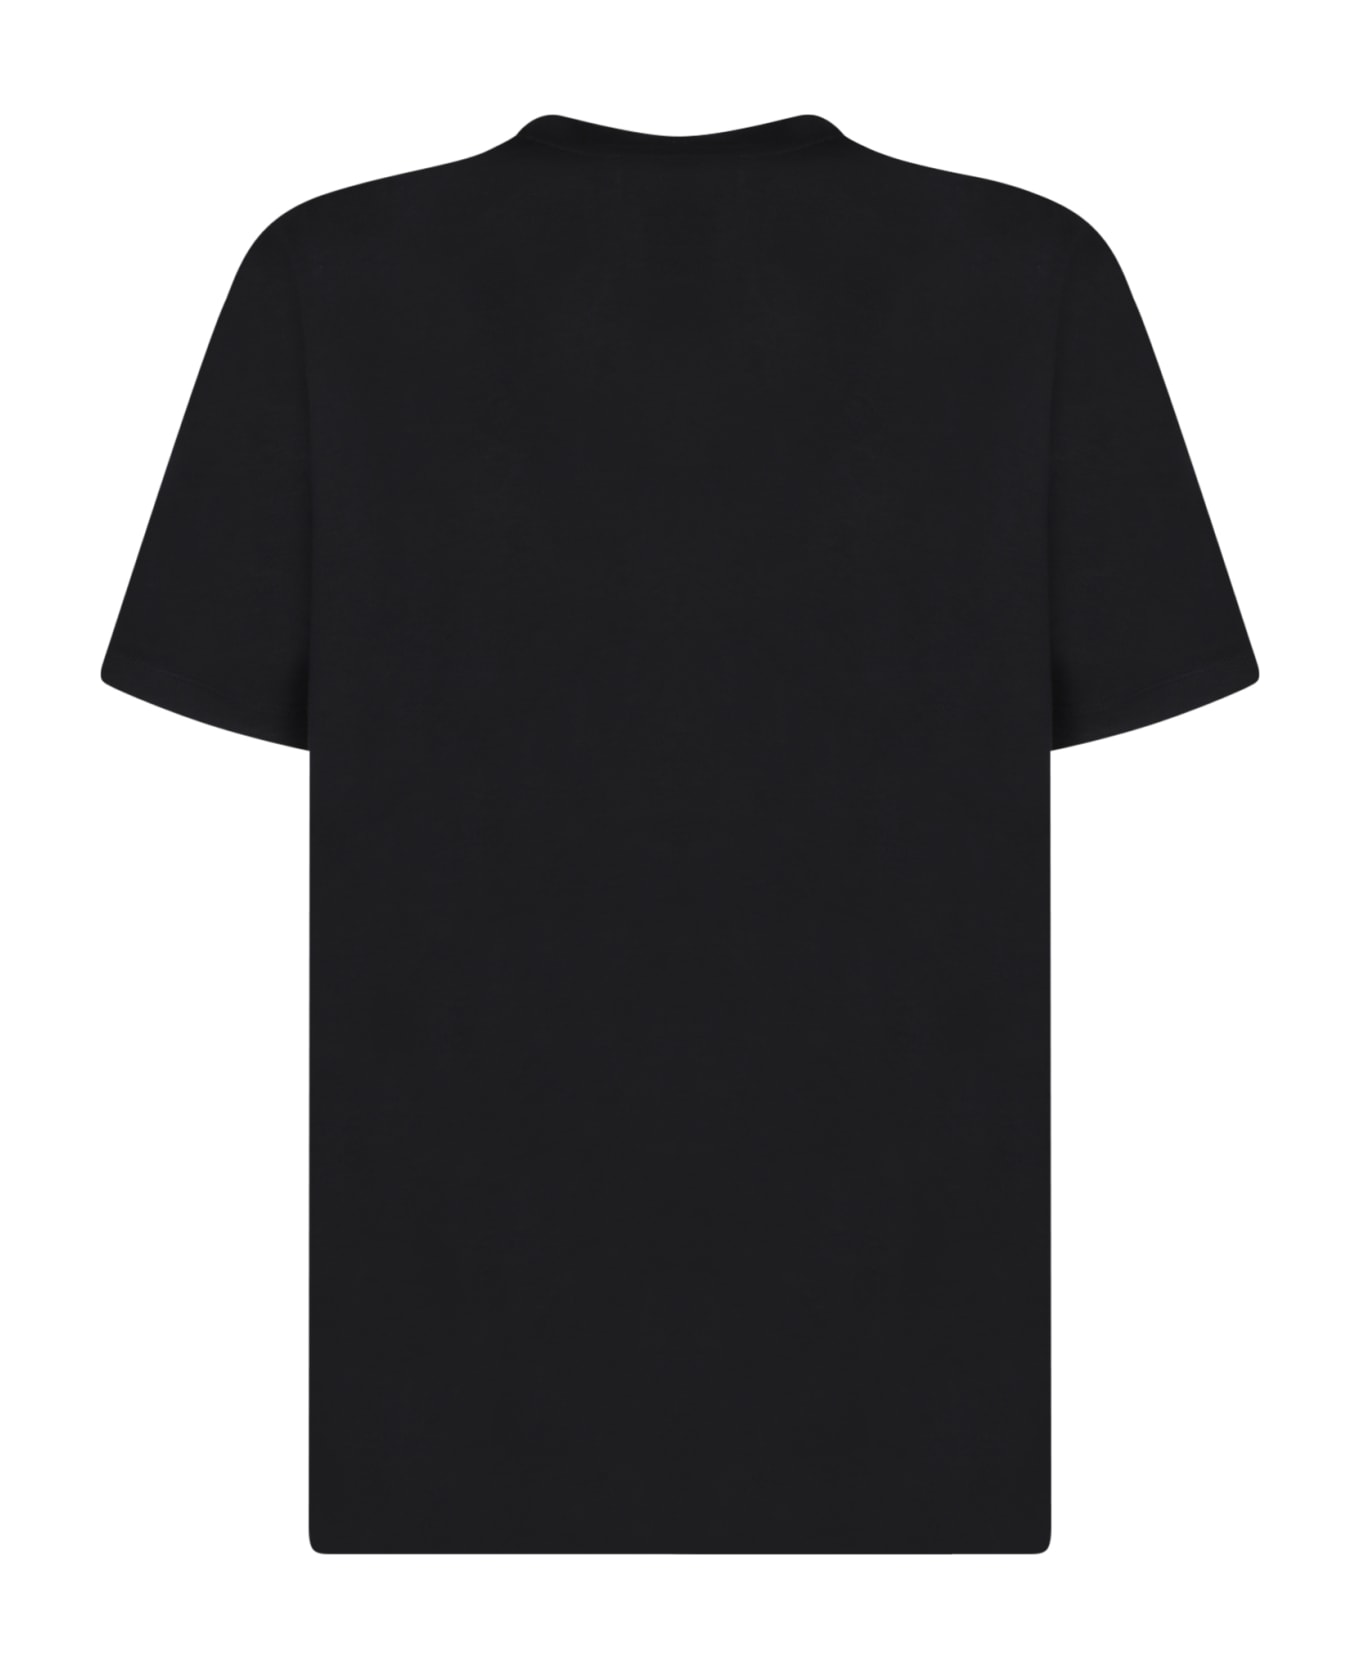 Balmain Logo Black T-shirt - Black